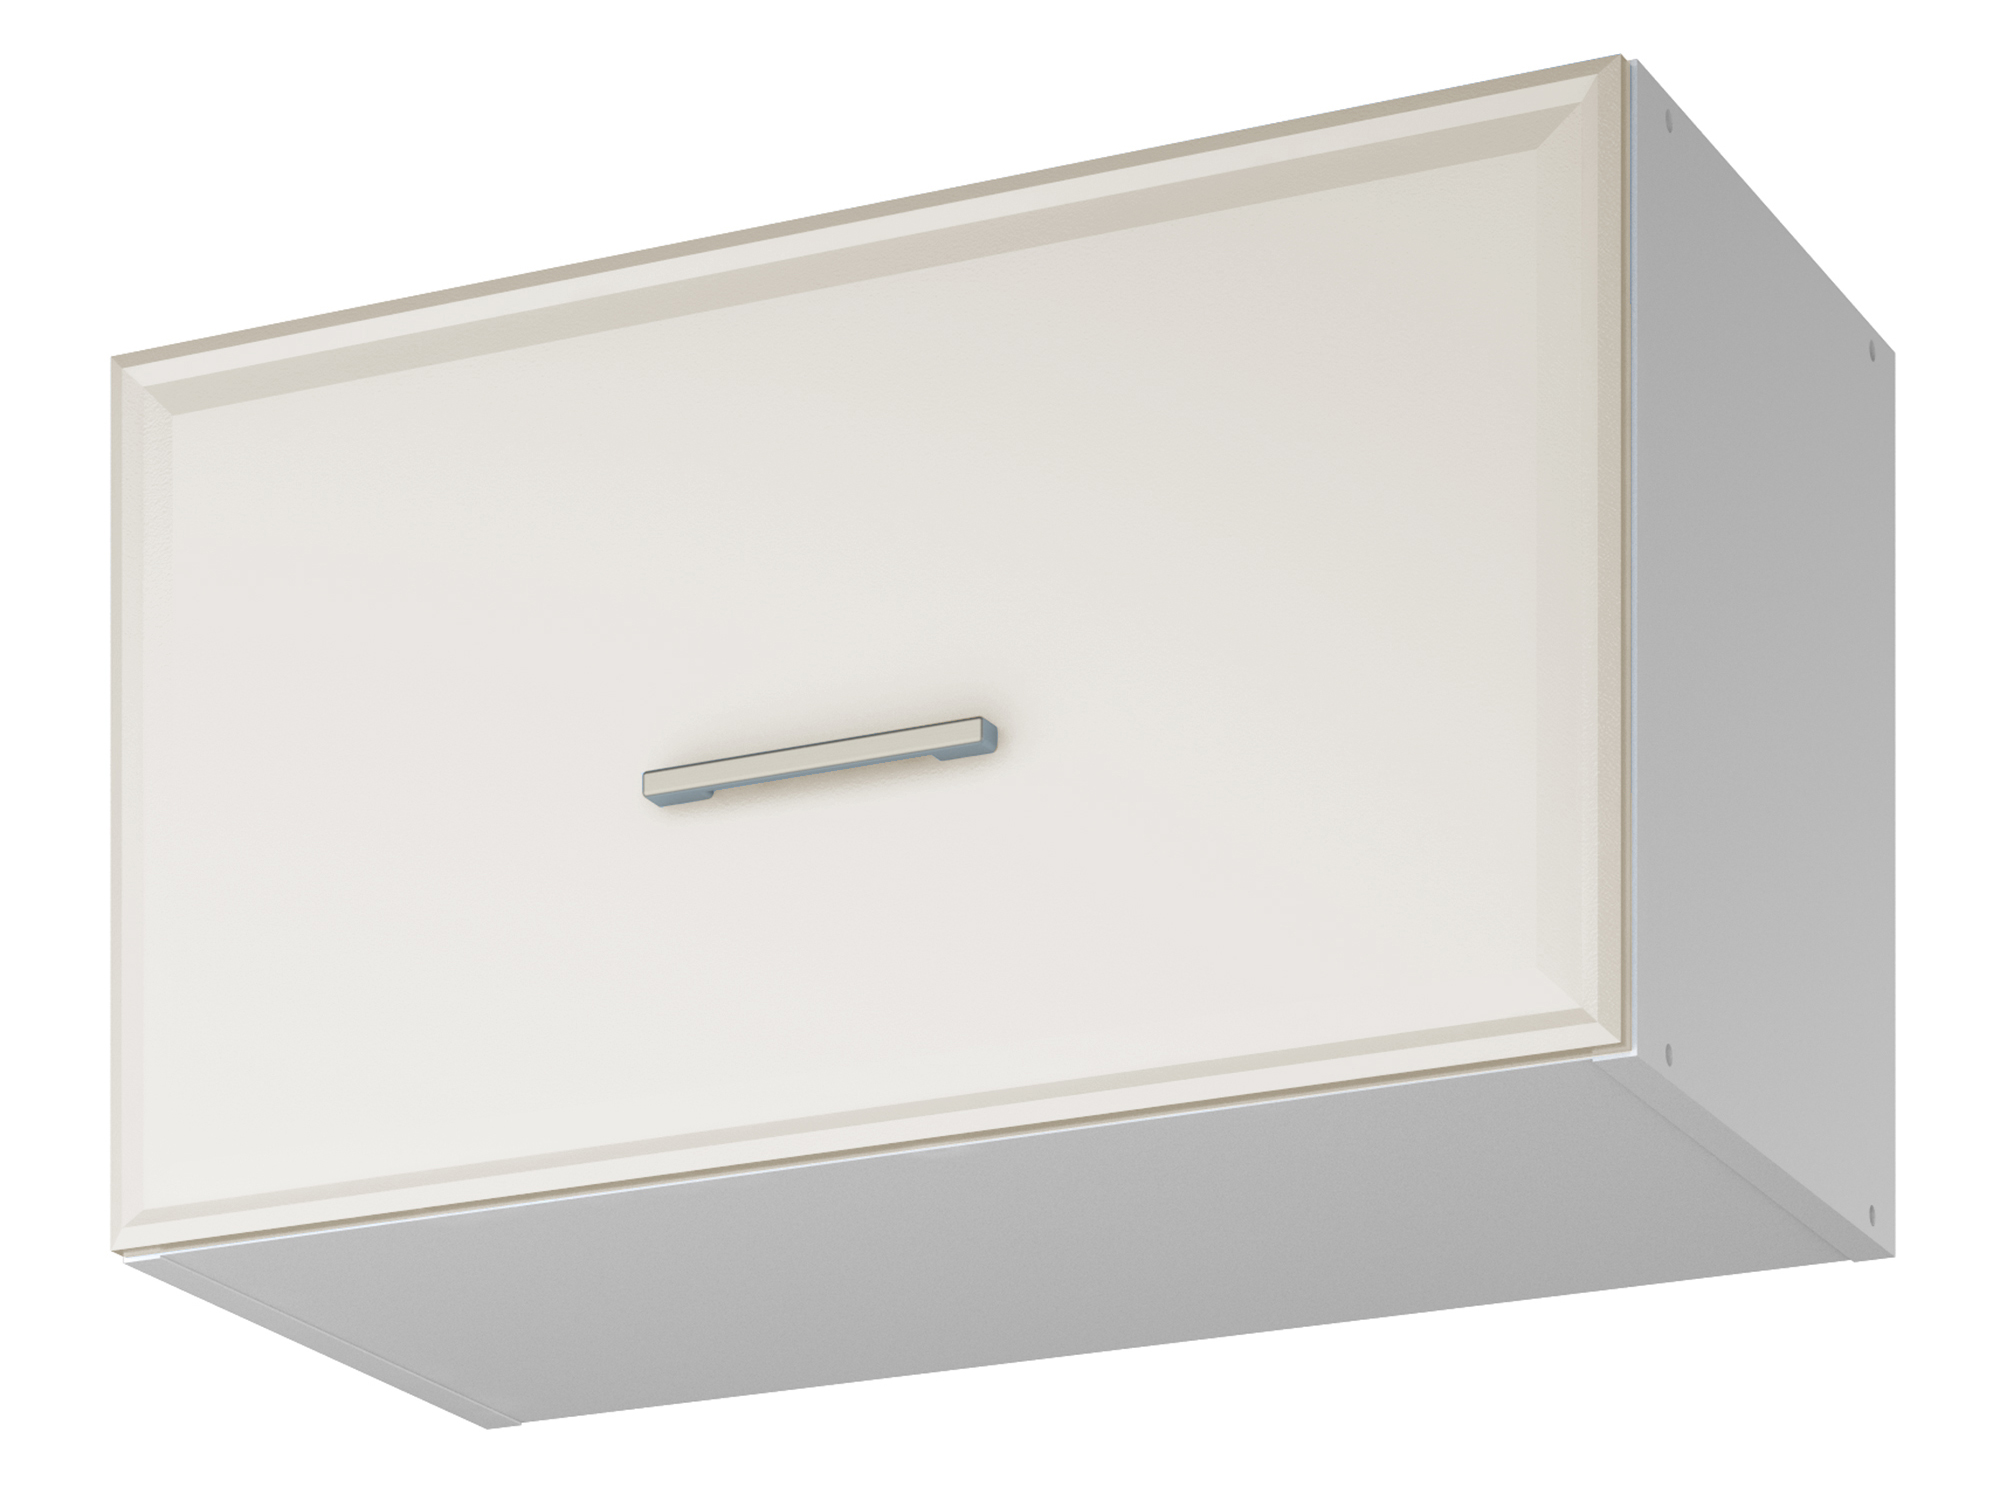 Шкаф навесной для вытяжки Greta 60 см Светлый, , Белый, МДФ, ЛДСП шкаф напольный greta 60 см светлый белый мдф лдсп